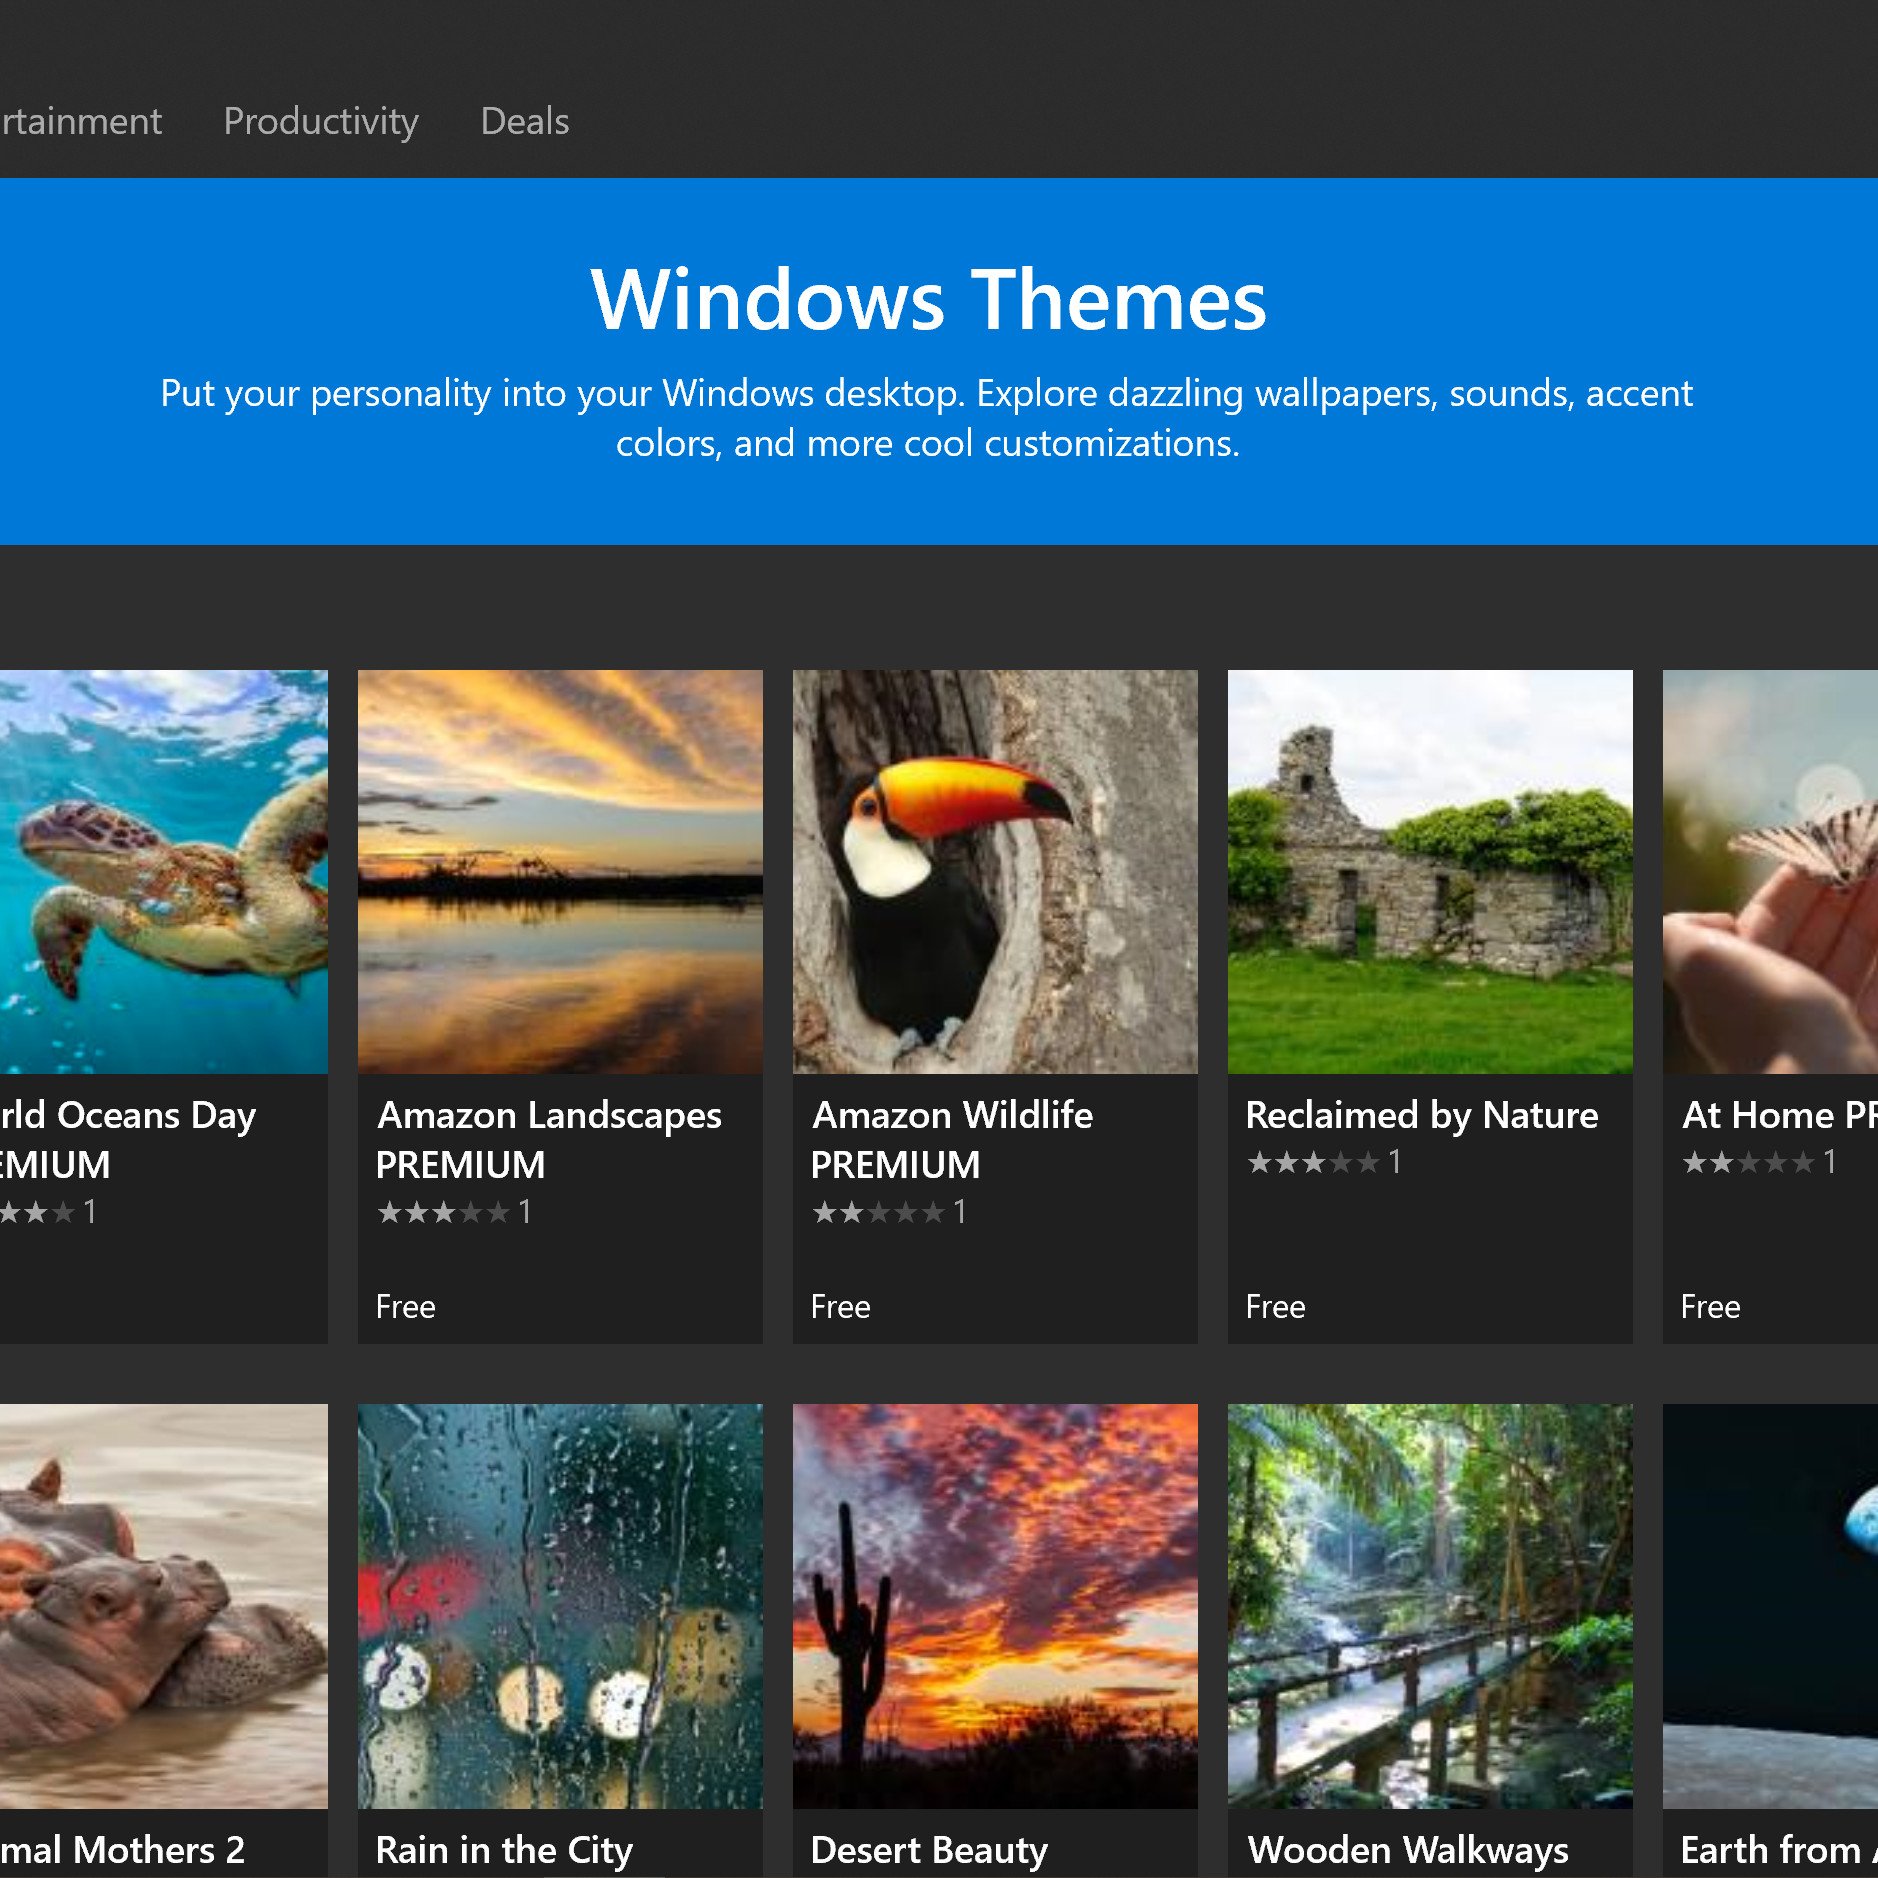 Windows Themes